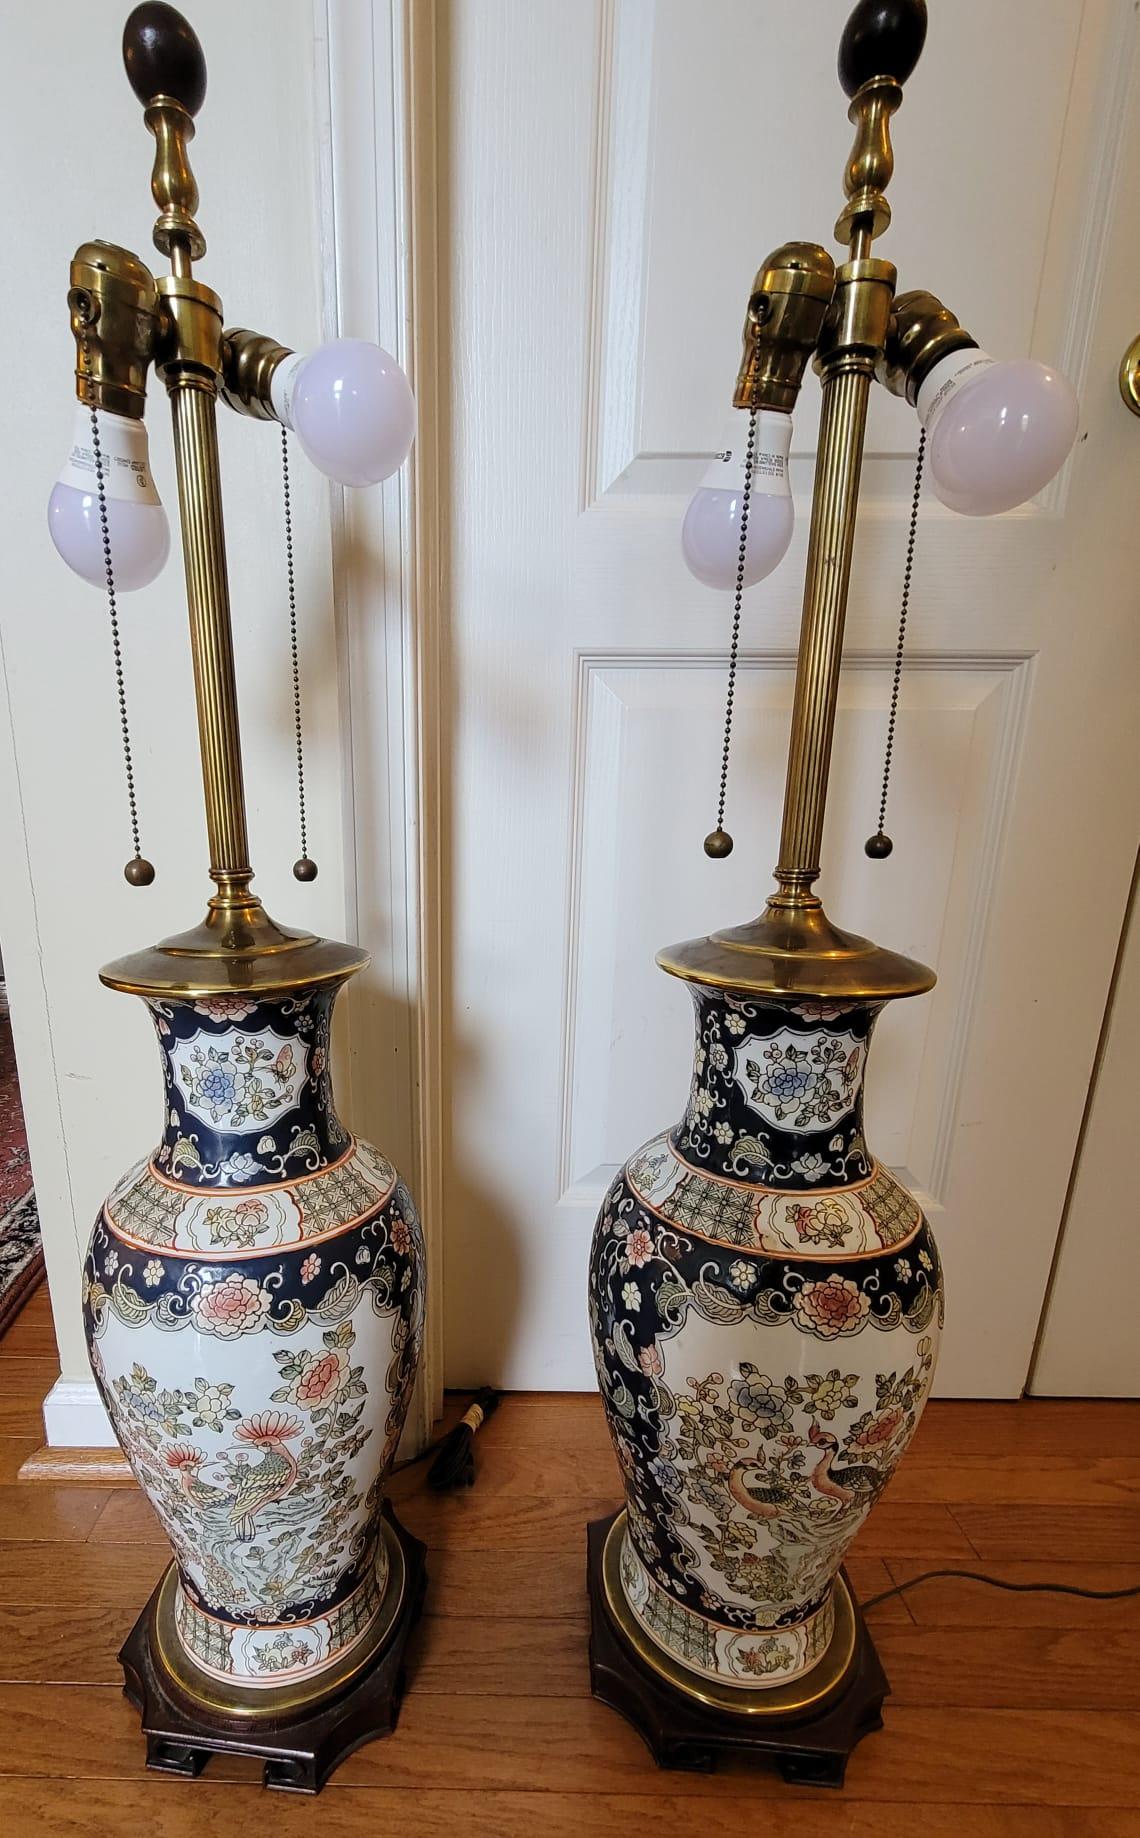 Paire de grands vases chinois en porcelaine décorée de paons émaillés, montés comme lampes. Mesurent 8 pouces de diamètre et mesurent 39 pouces de haut jusqu'à la pointe des épis de faîtage.